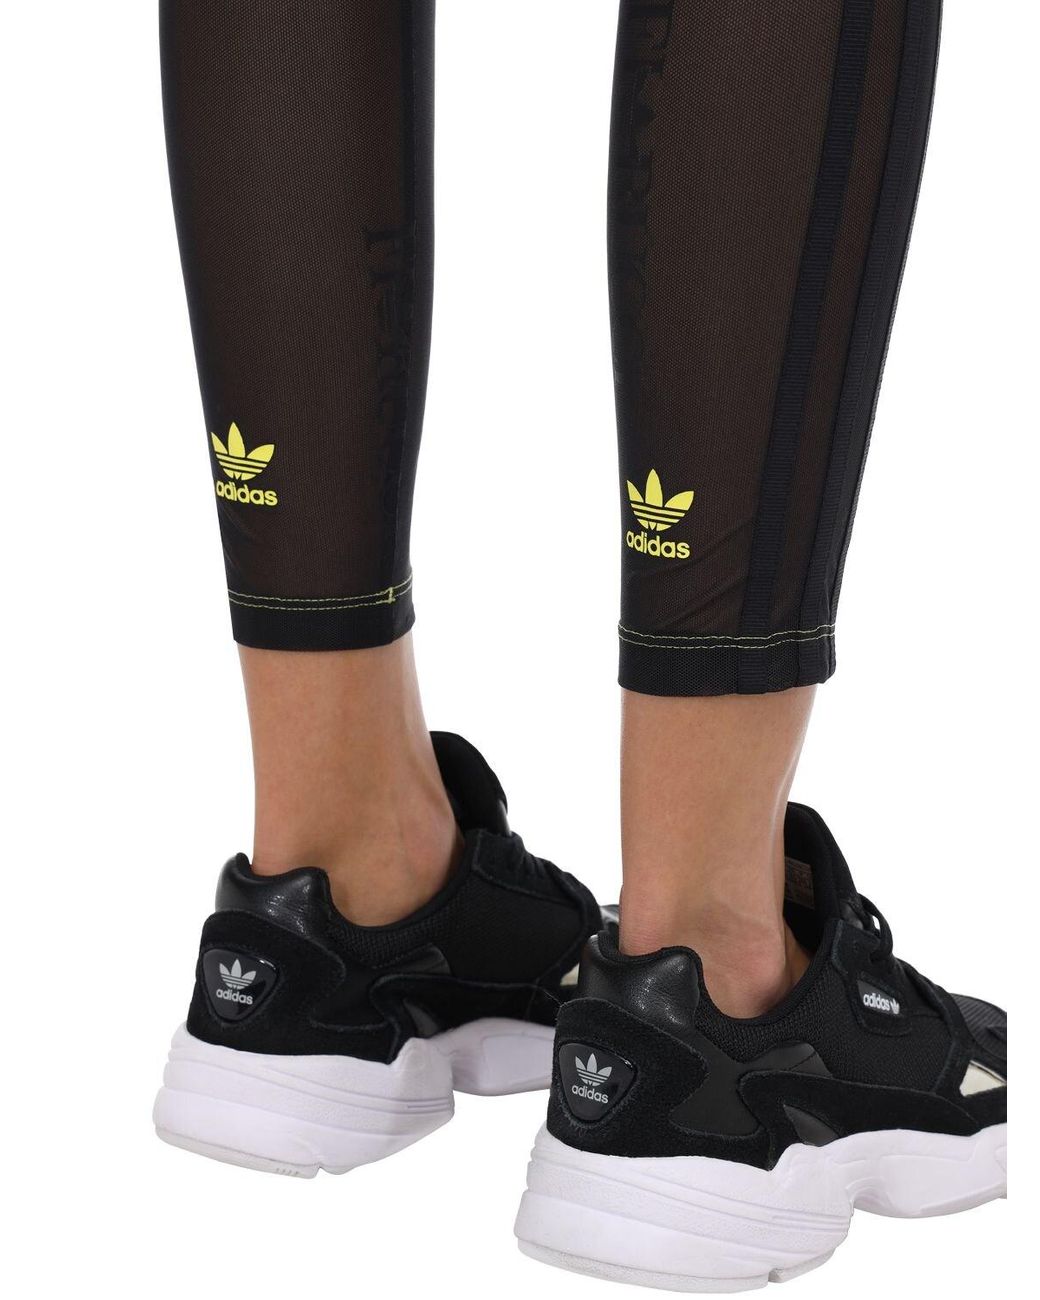 Legging Transparente Adidas Originals e Fiorucci, Calça Feminina Adidas  Originals E Fiorucci Usado 71419047